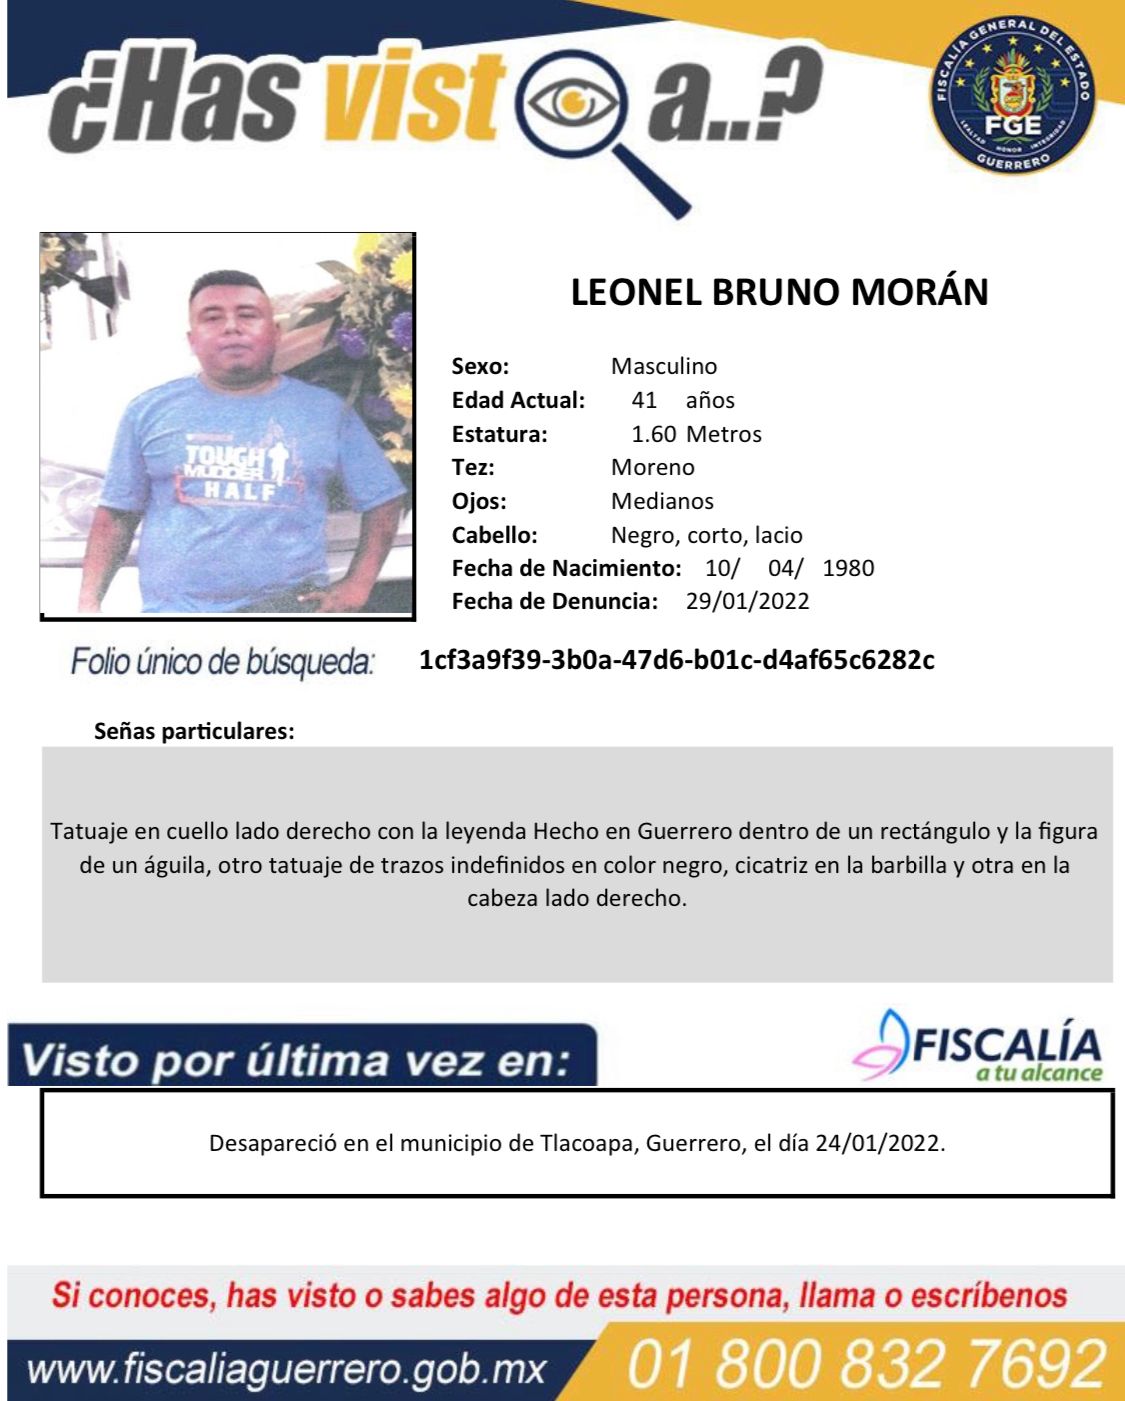 Fiscalía de Guerrero investiga desaparición de tres personas del sexo masculino en Tlacoapa región Montaña